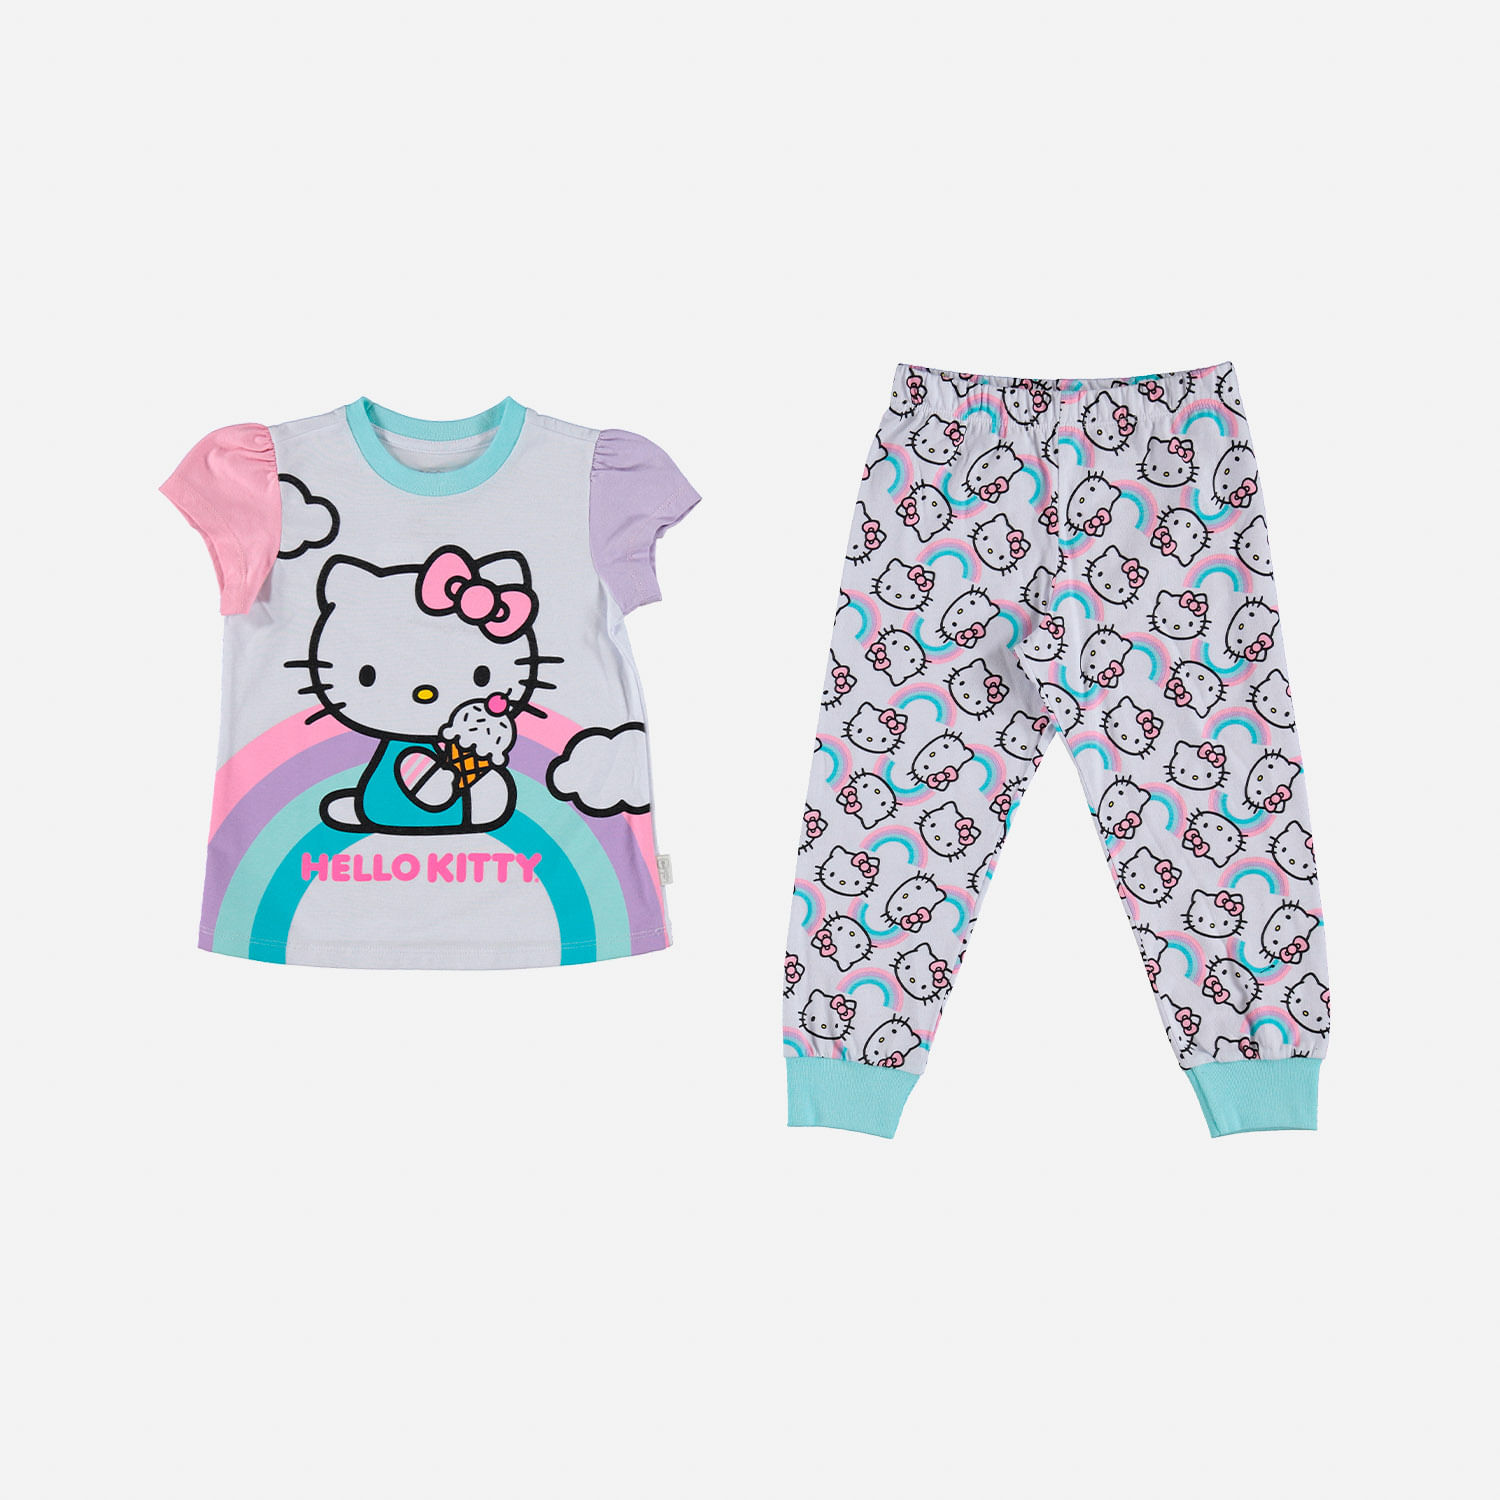 avance En cualquier momento Mentor Pijama de niña, manga corta/pantalón largo blanca/rosada de Hello Kitty © Sanrio